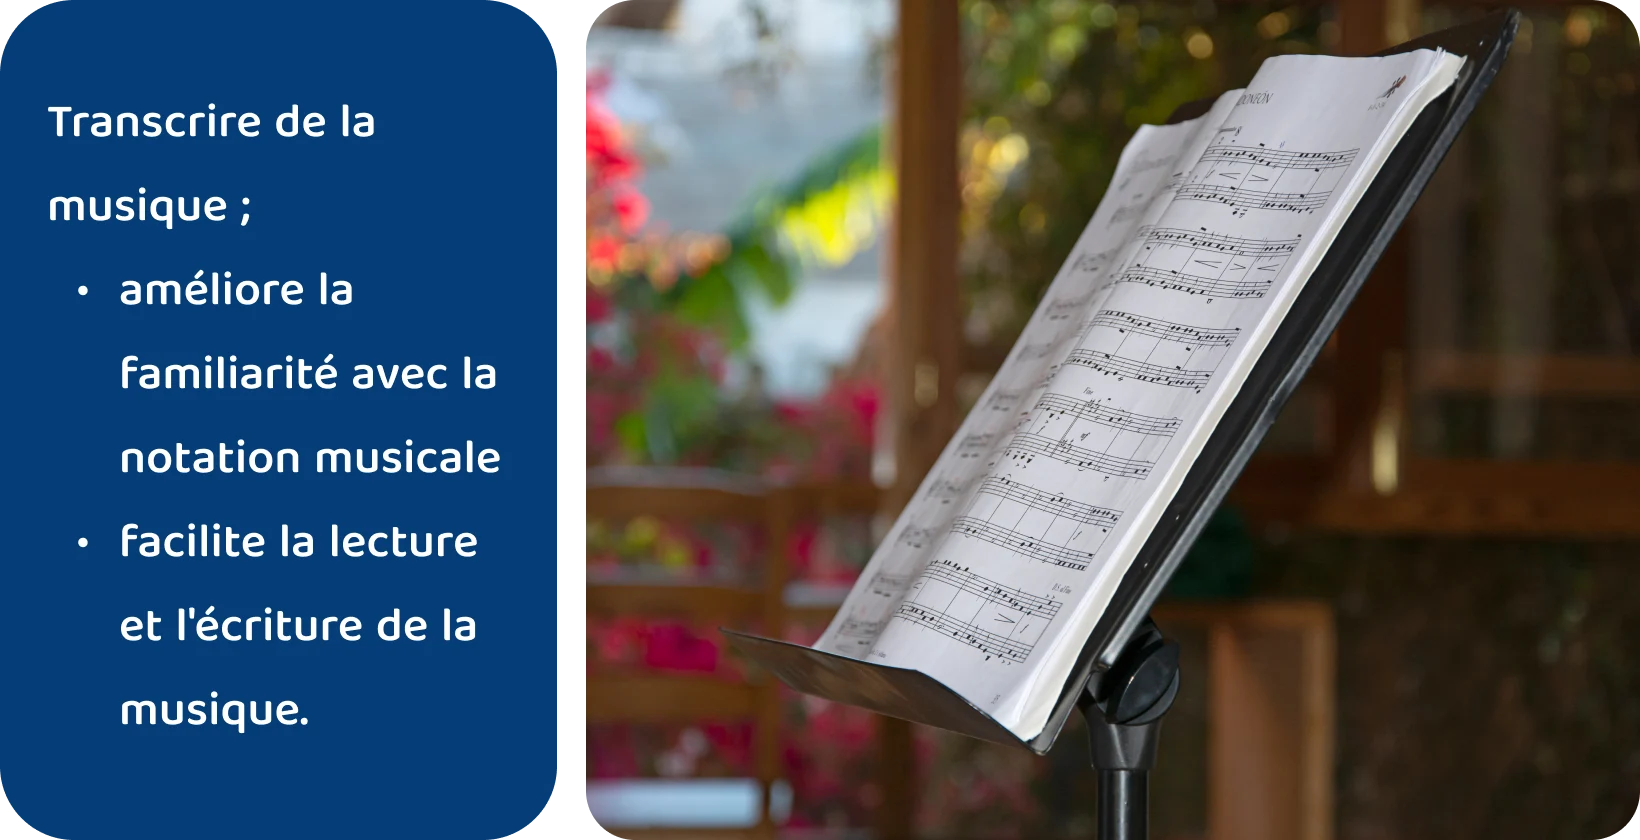 Partitions sur un support avec un arrière-plan naturel flou, soulignant les avantages de la transcription de la musique pour la littératie musicale.